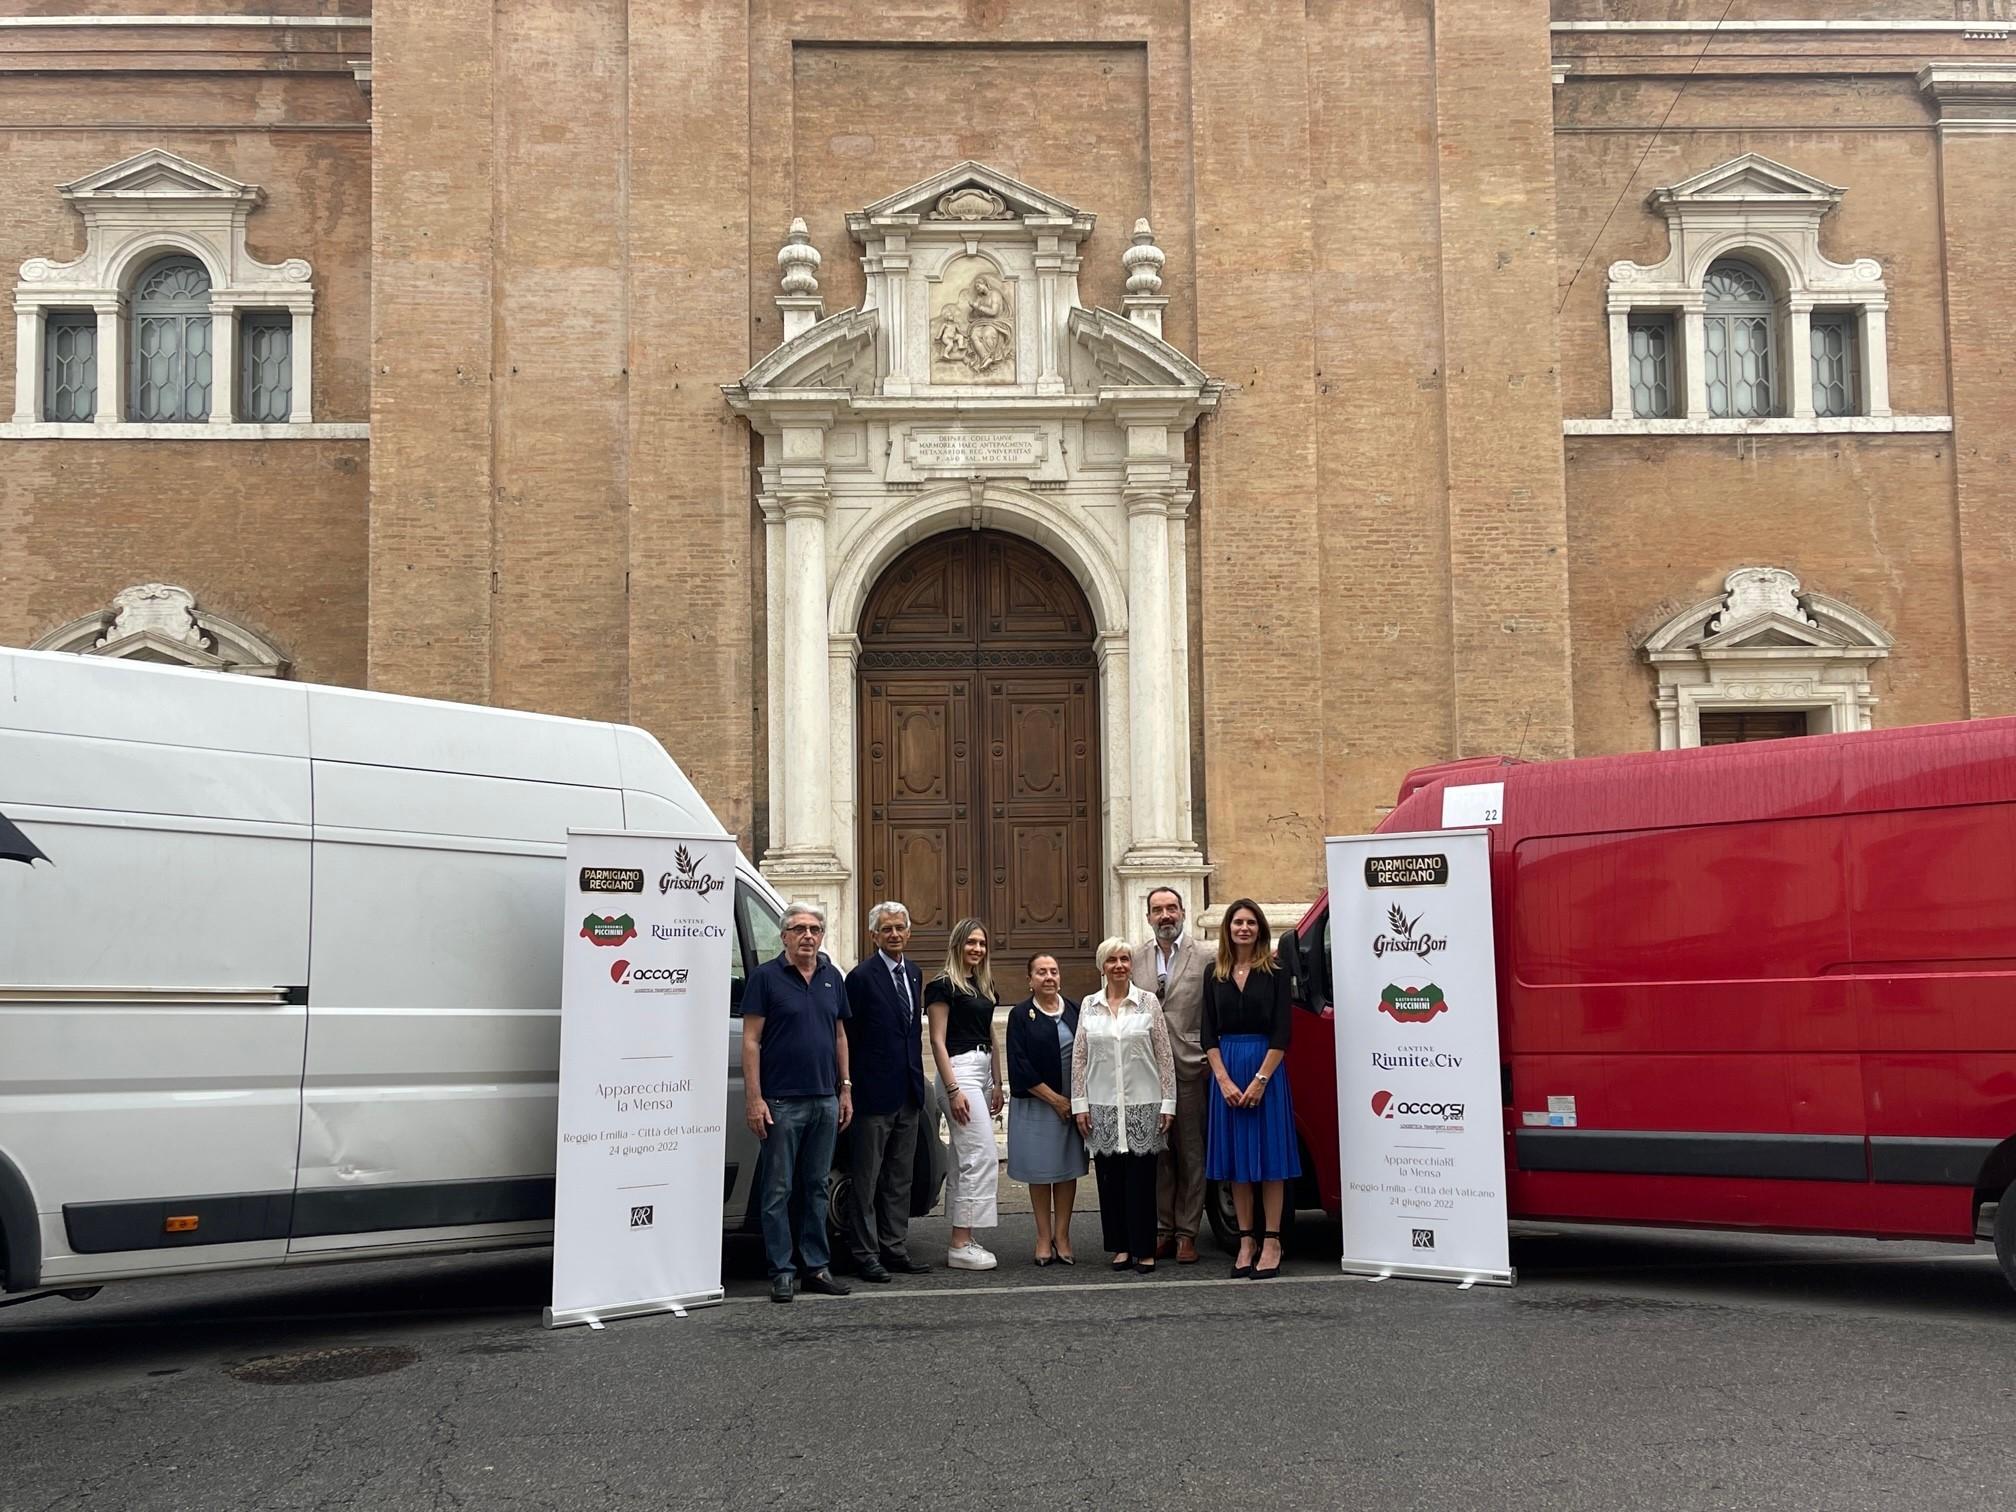 Le eccellenze made in Reggio Emilia alle mense di Papa Francesco